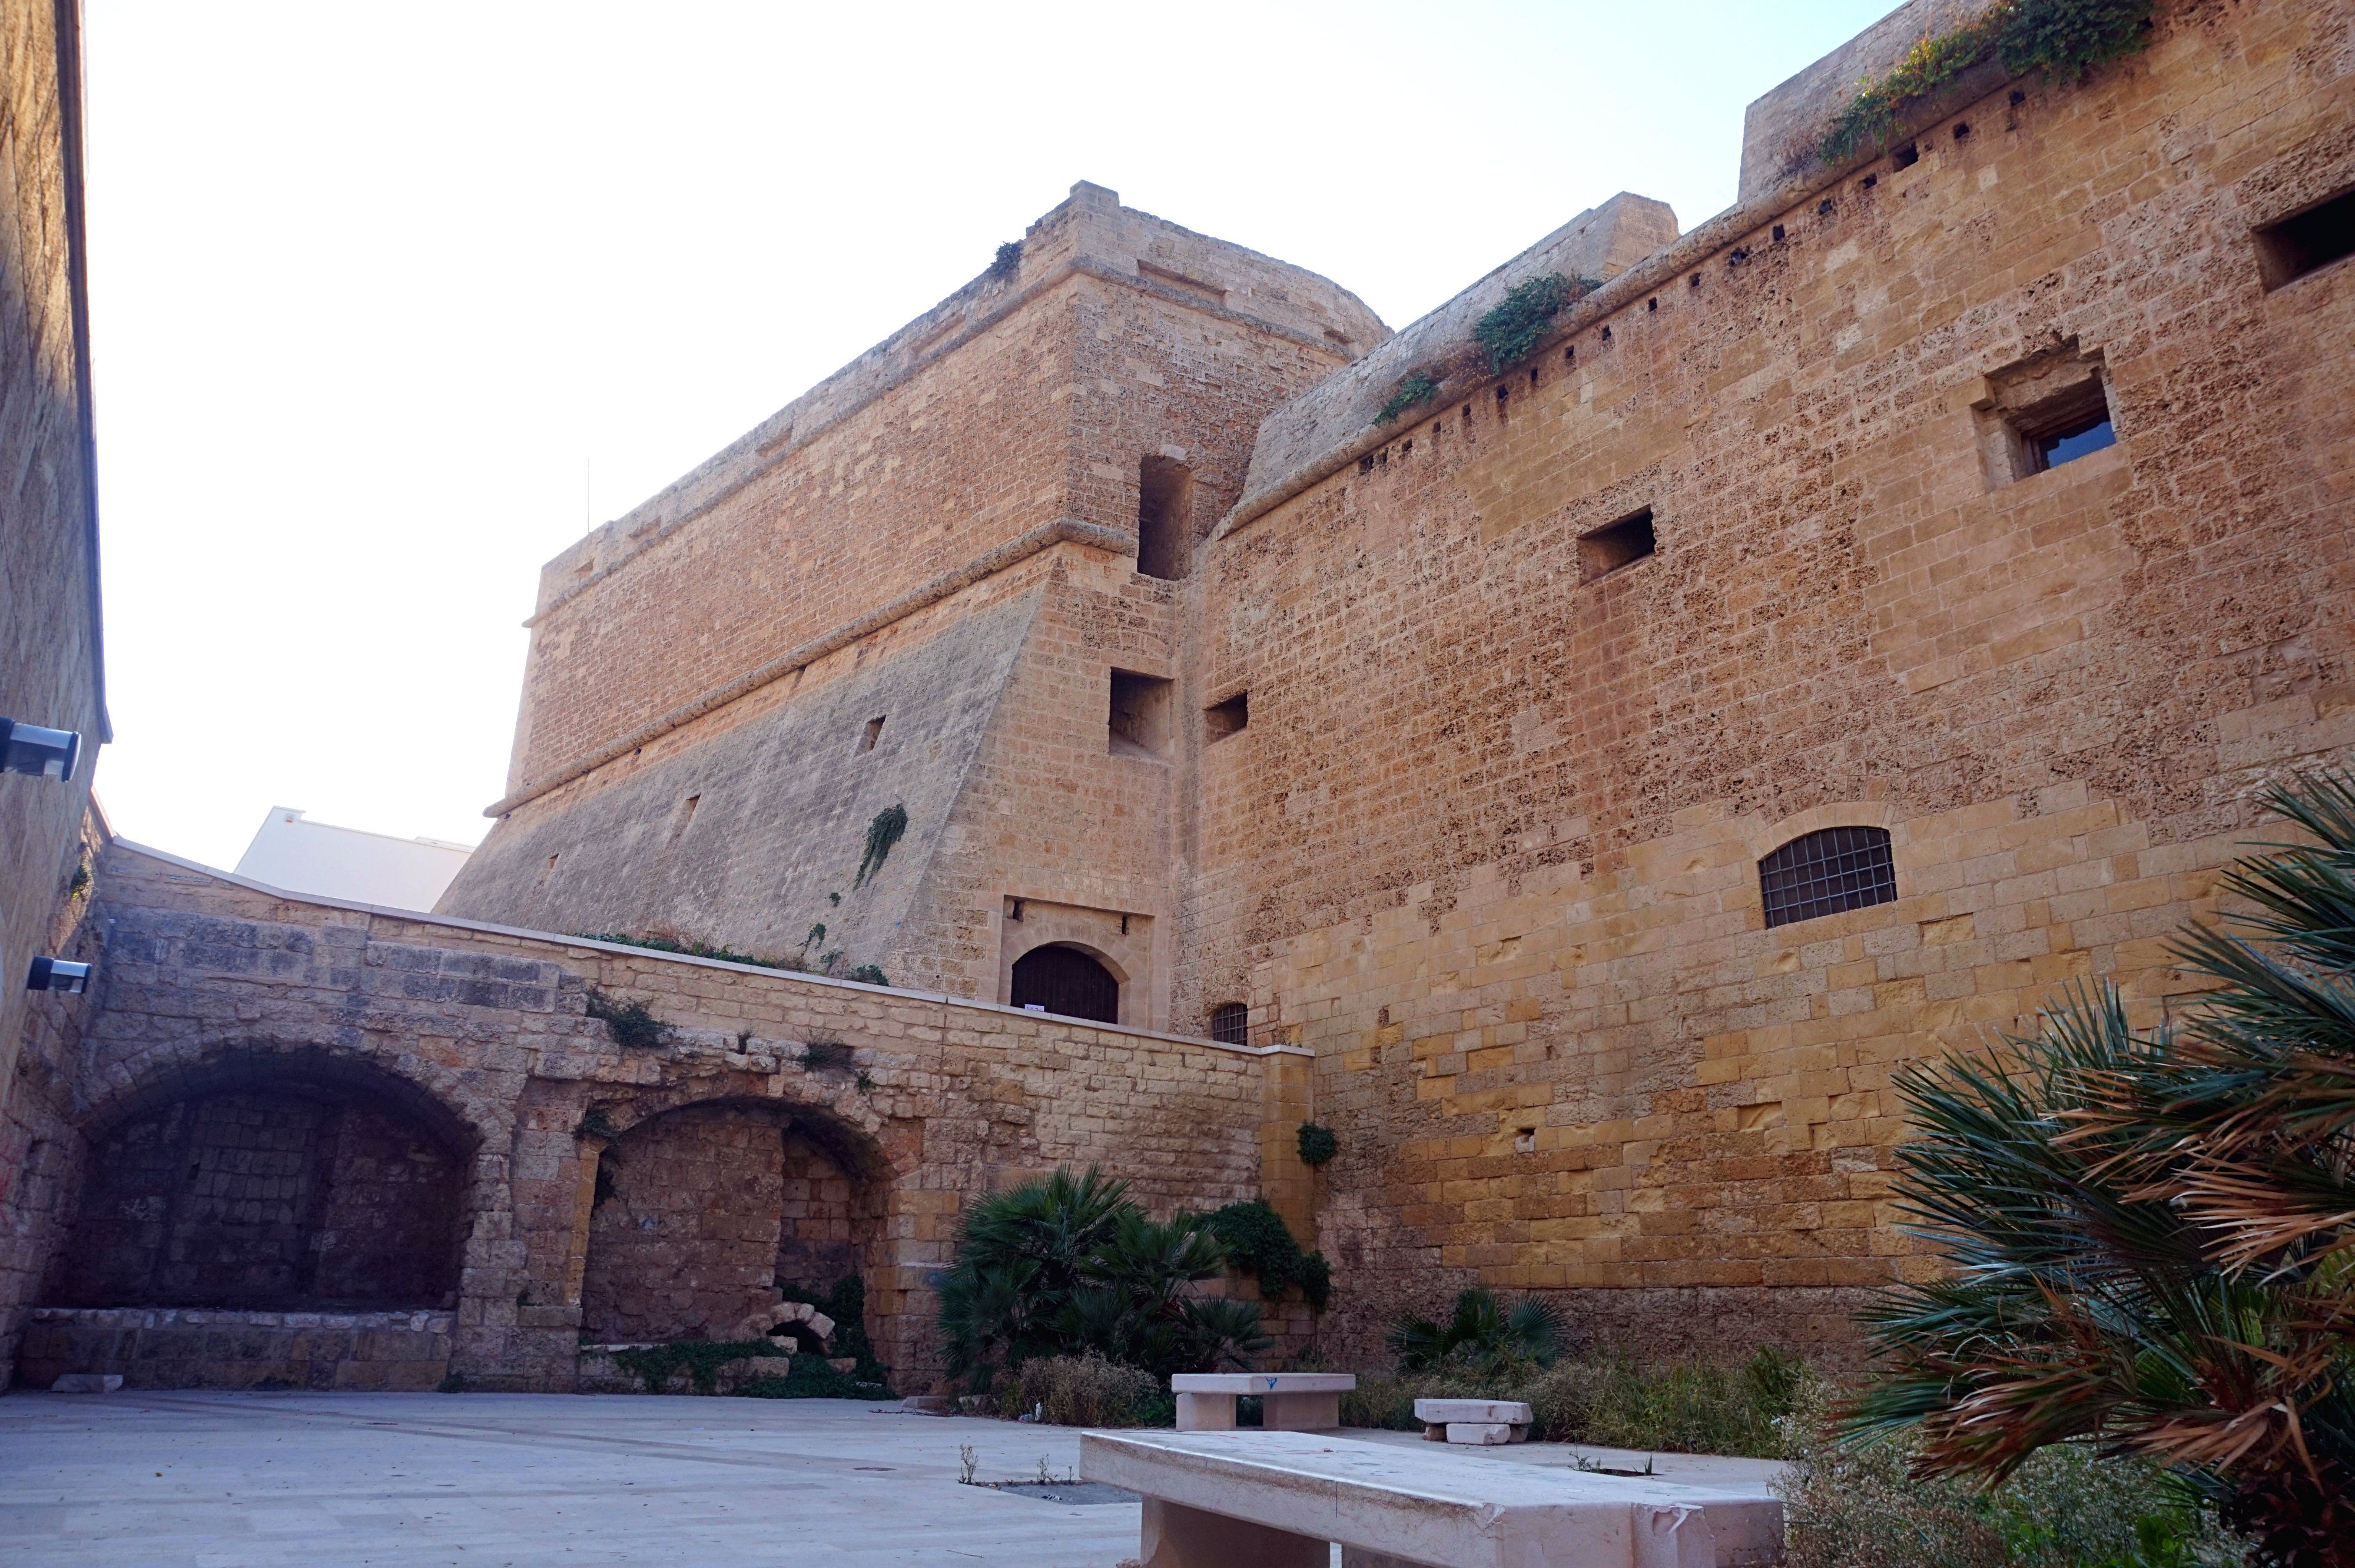 Mola di Bari Castle, Puglia